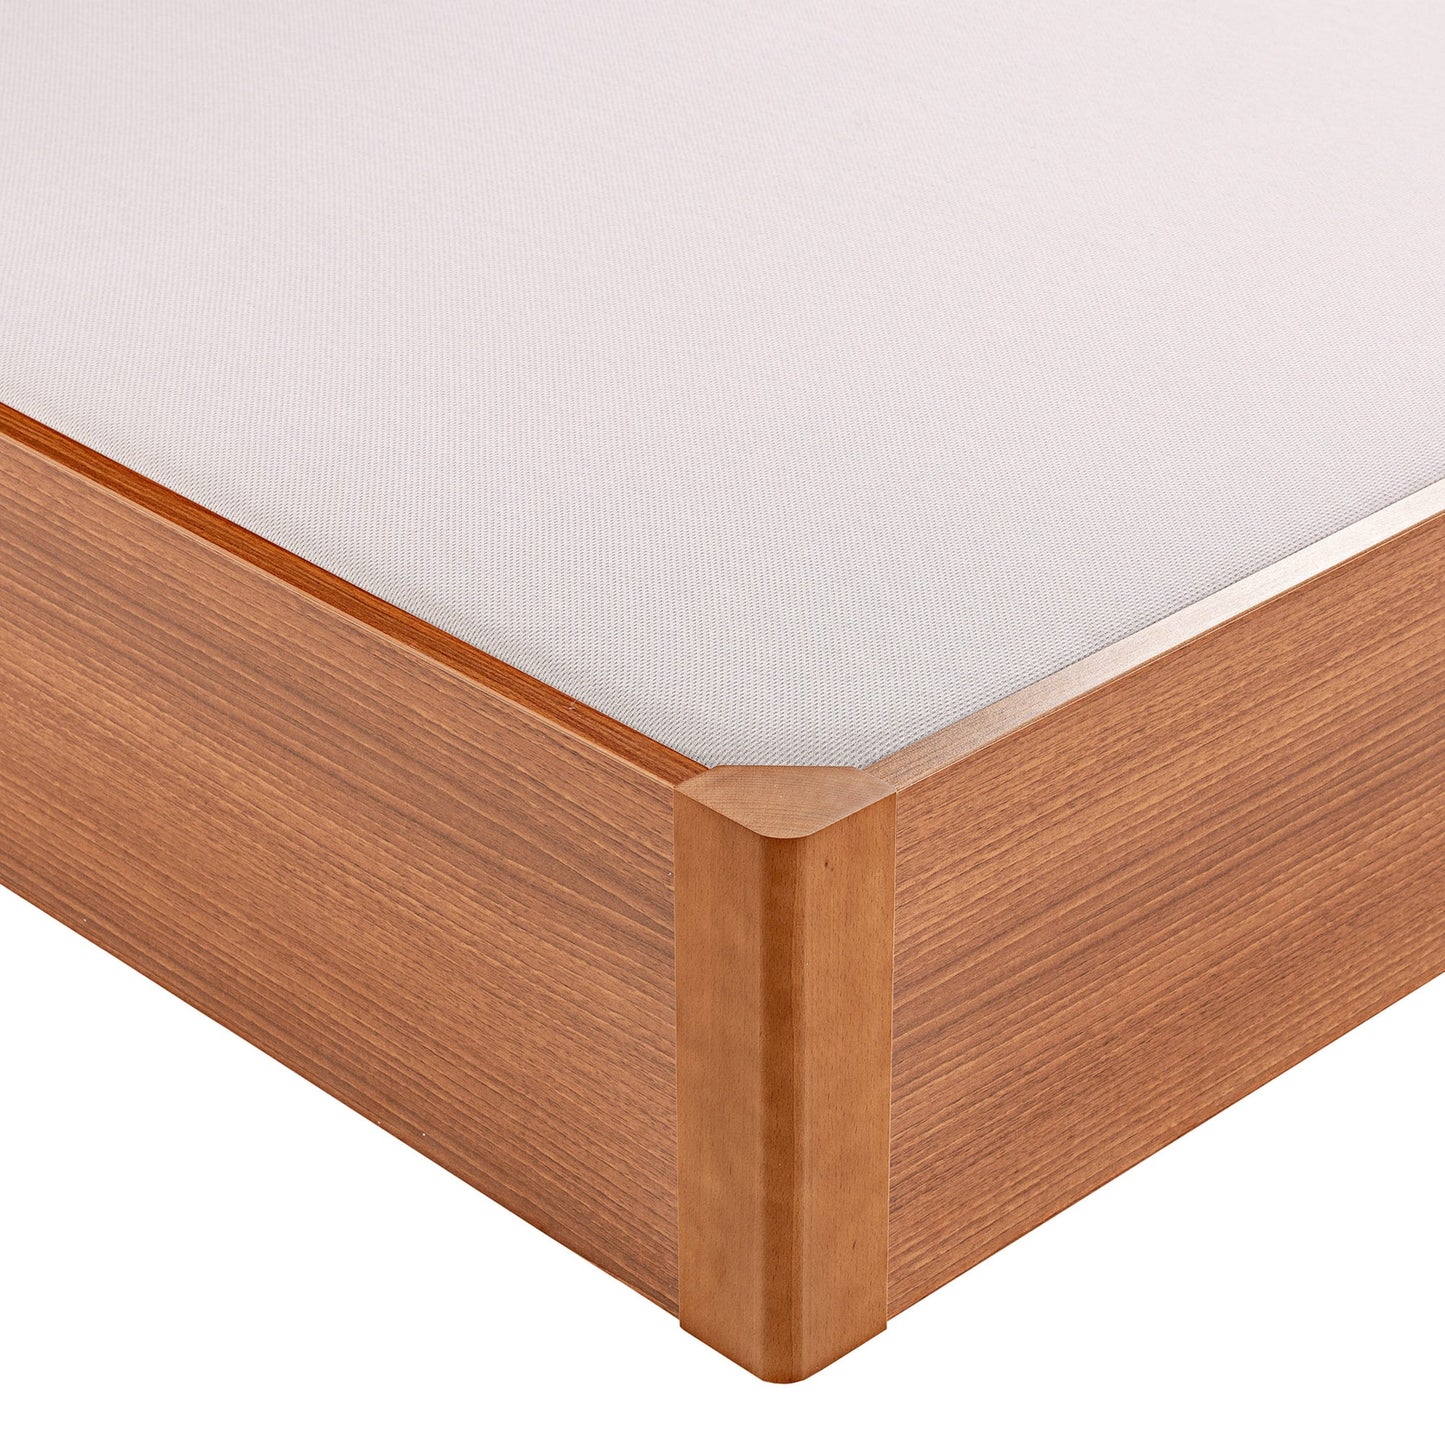 Canapé abatible de madera eléctrico tapa única de color cerezo - DESIGN - 150x200